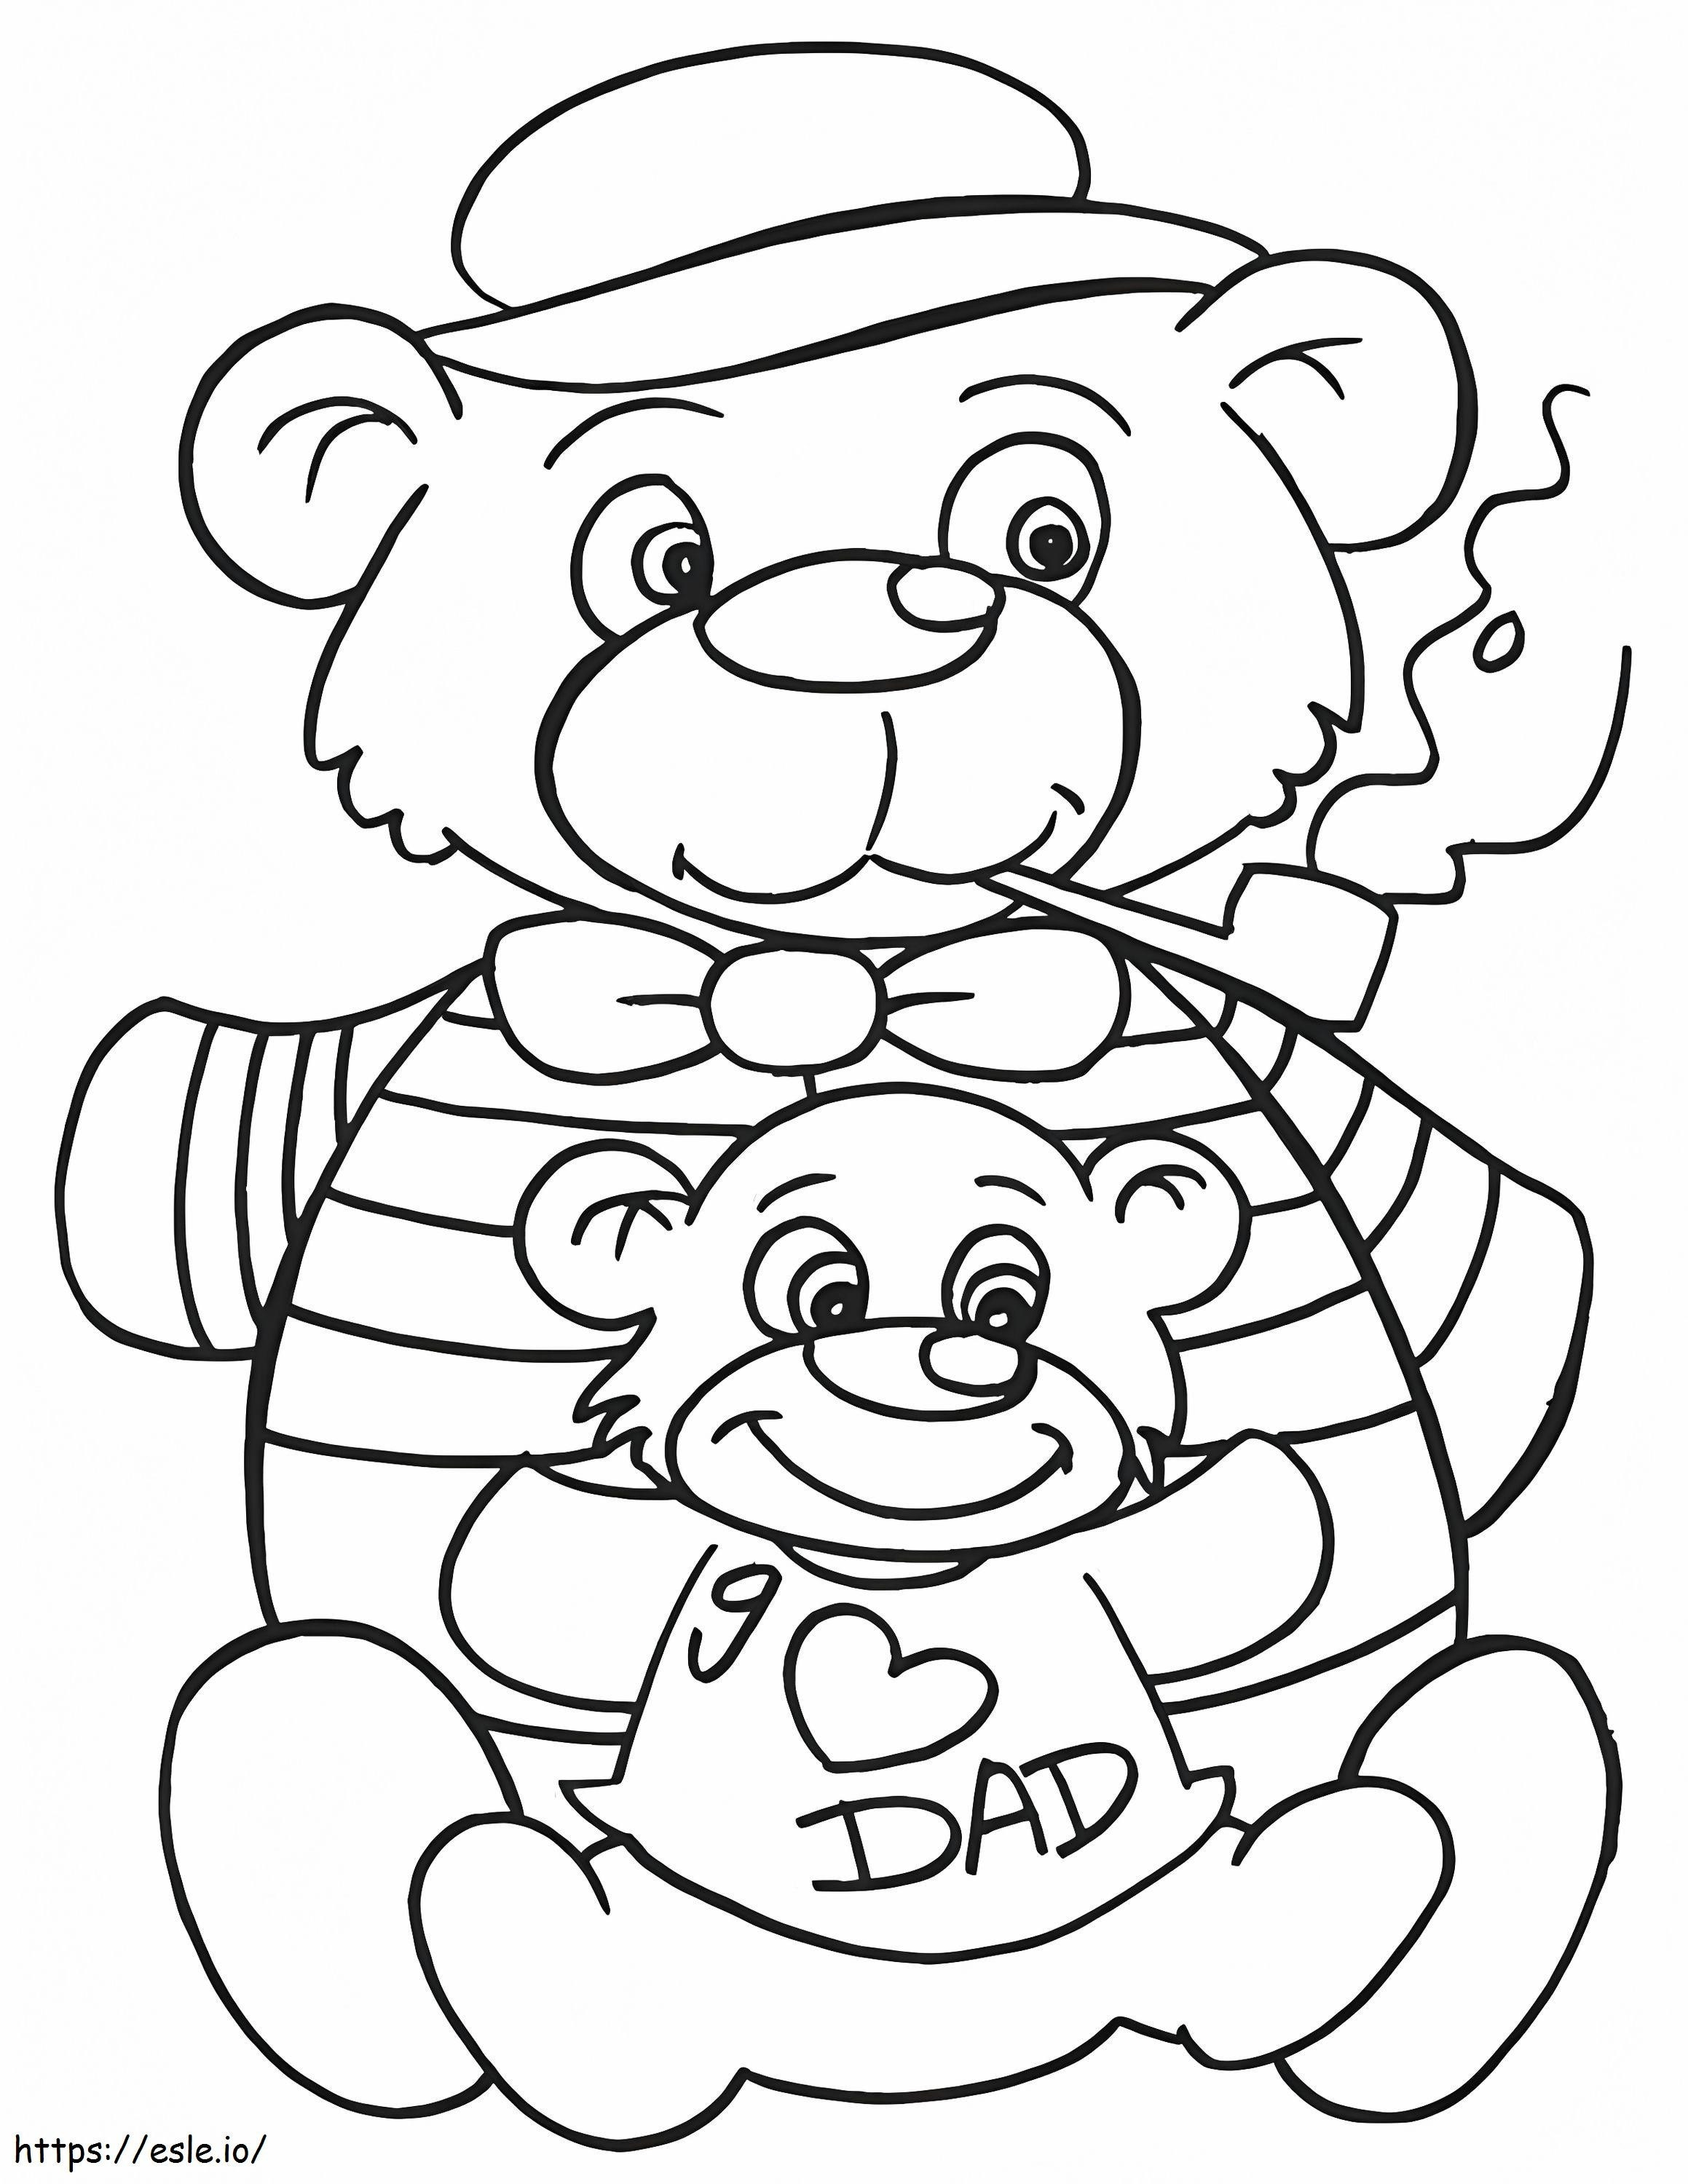 Ursinho de pelúcia pai e filho para colorir